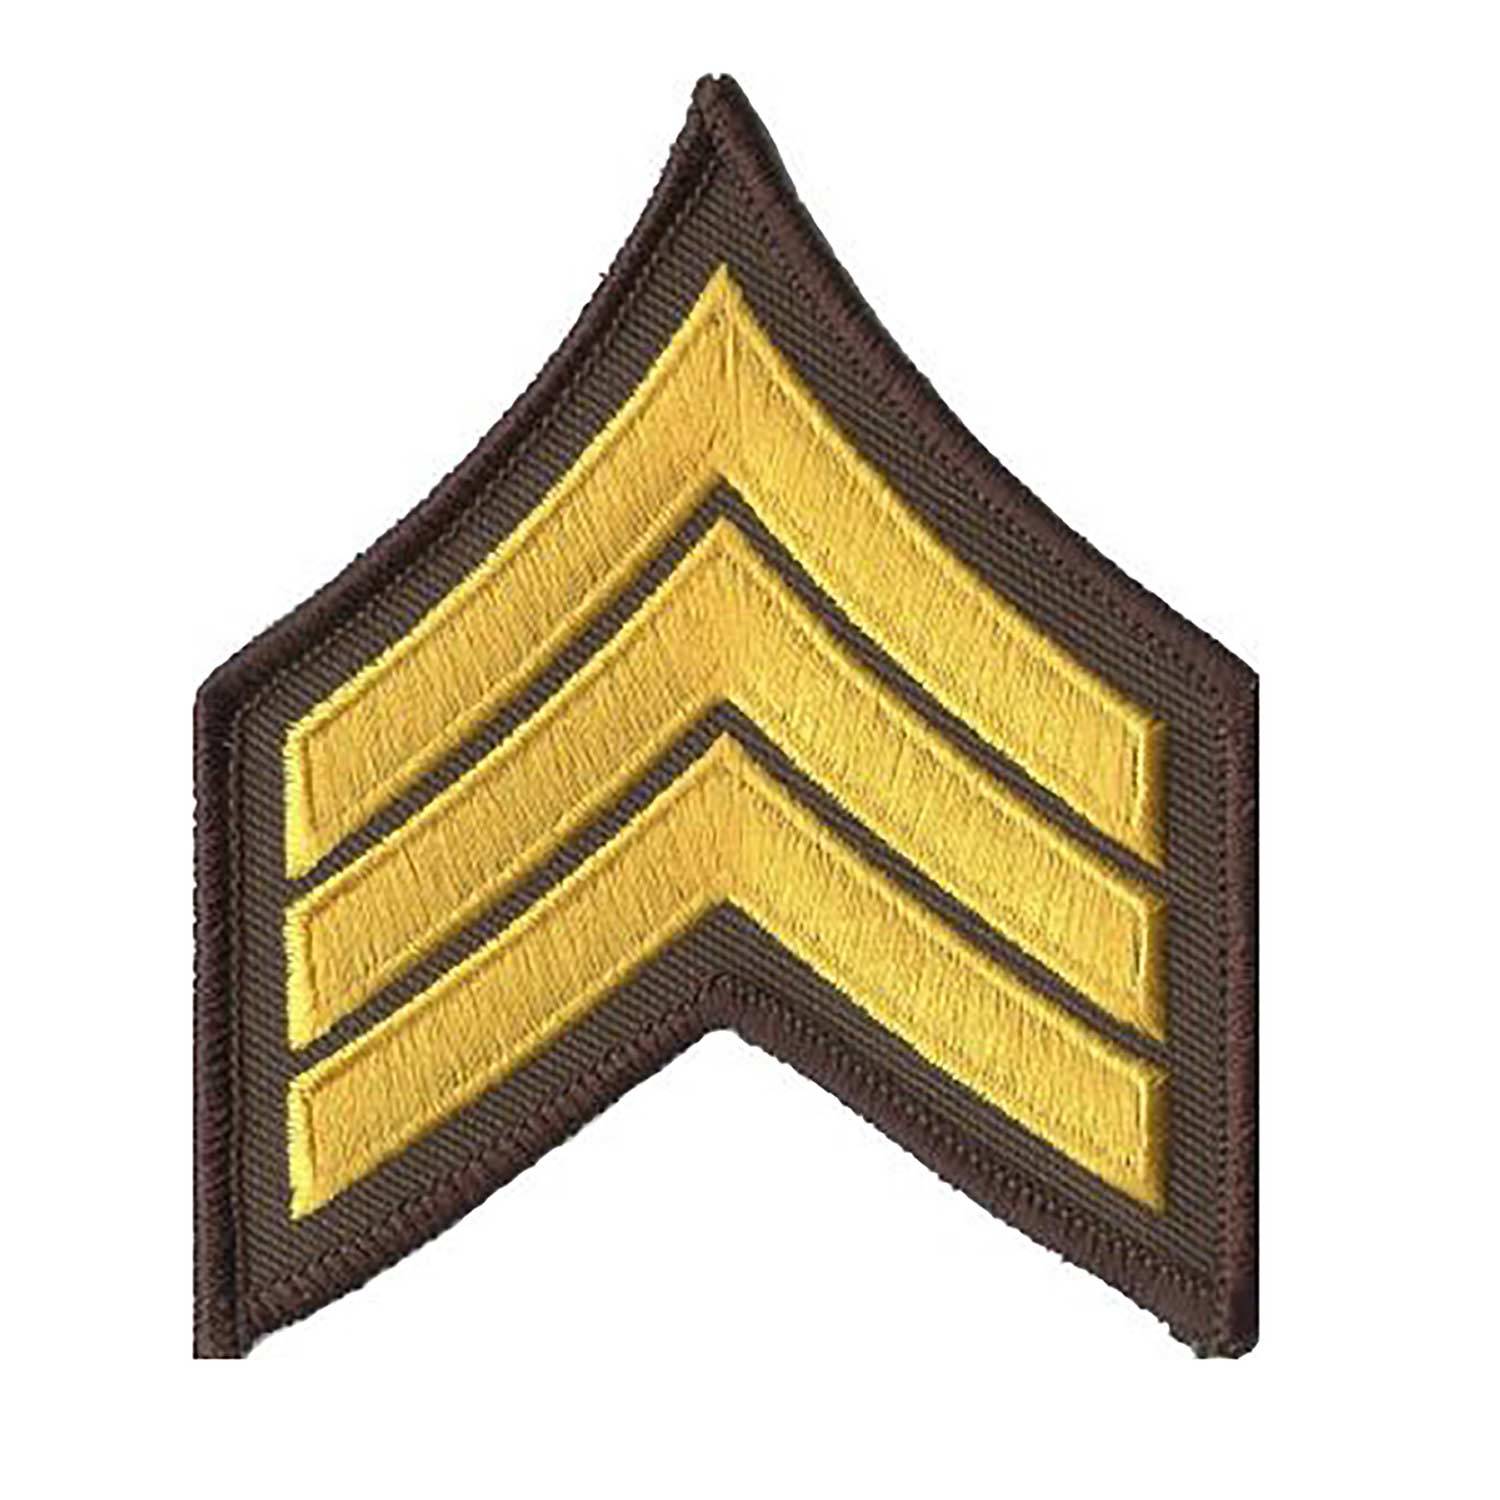 Premier Emblems Sergeant Chevron